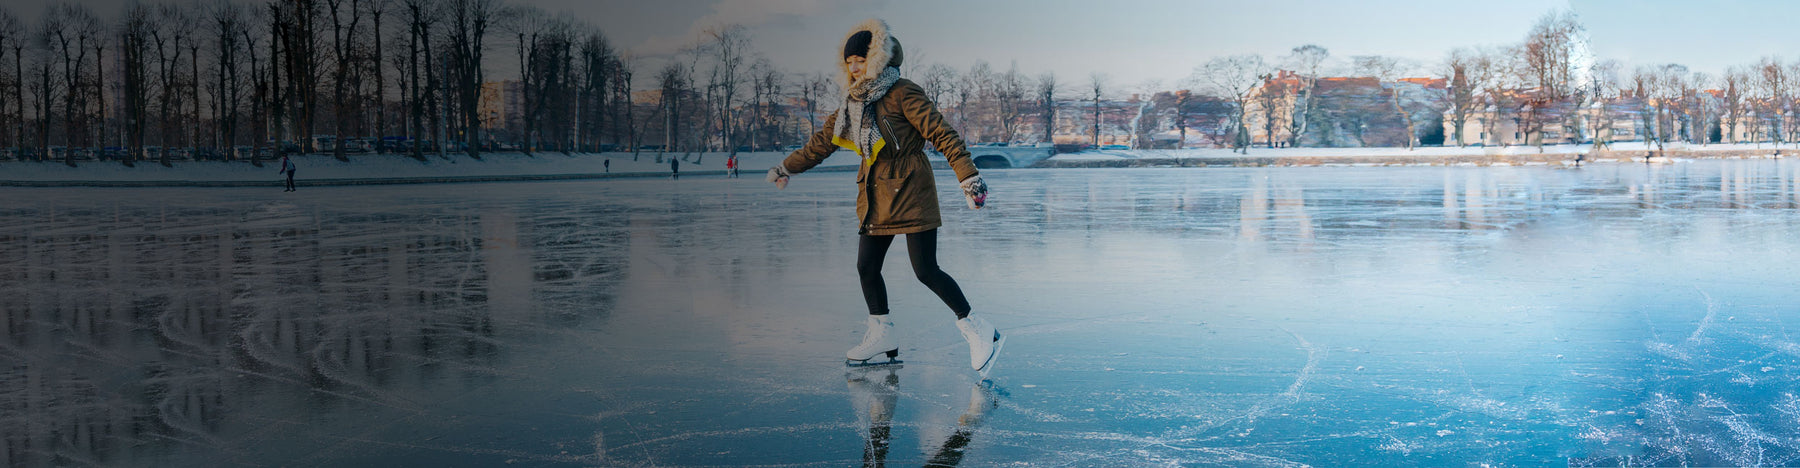 Ice Skater on Safe Ice Skating Rink Pond